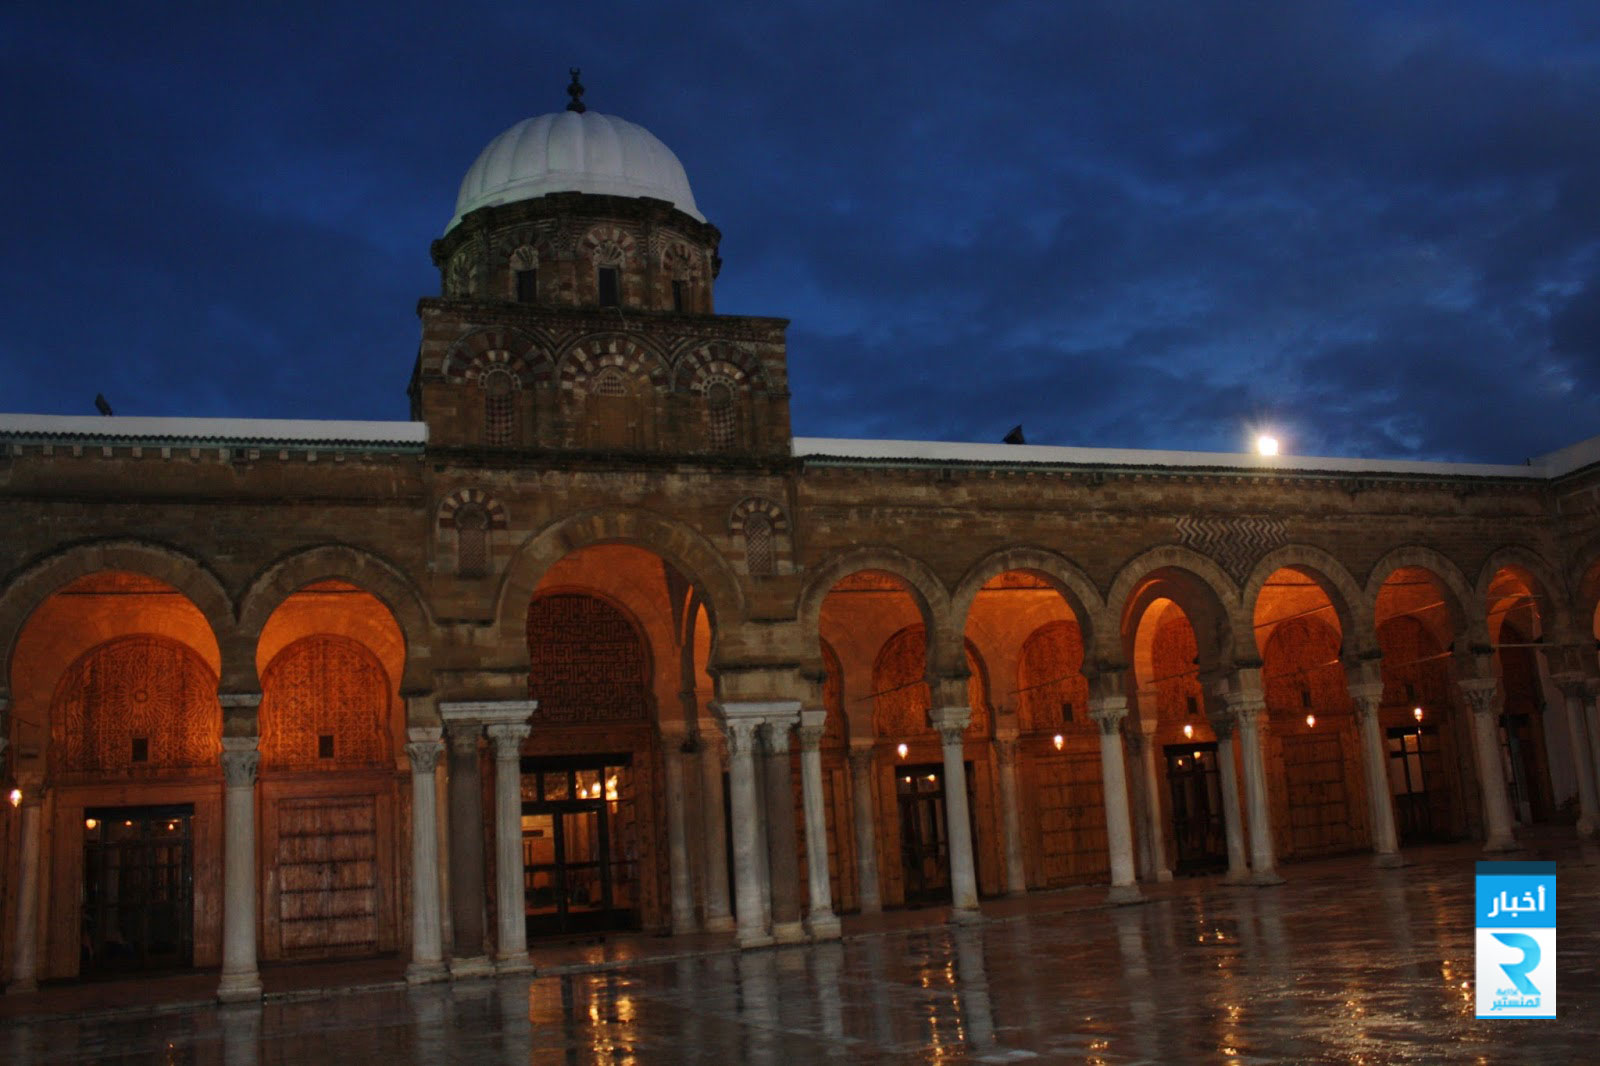 جامع-الزيتونة.-تونس-العاصمة-تصوير-عبدالله-ناصر-صالح-بجنف٢-مارس-٢٠١٠